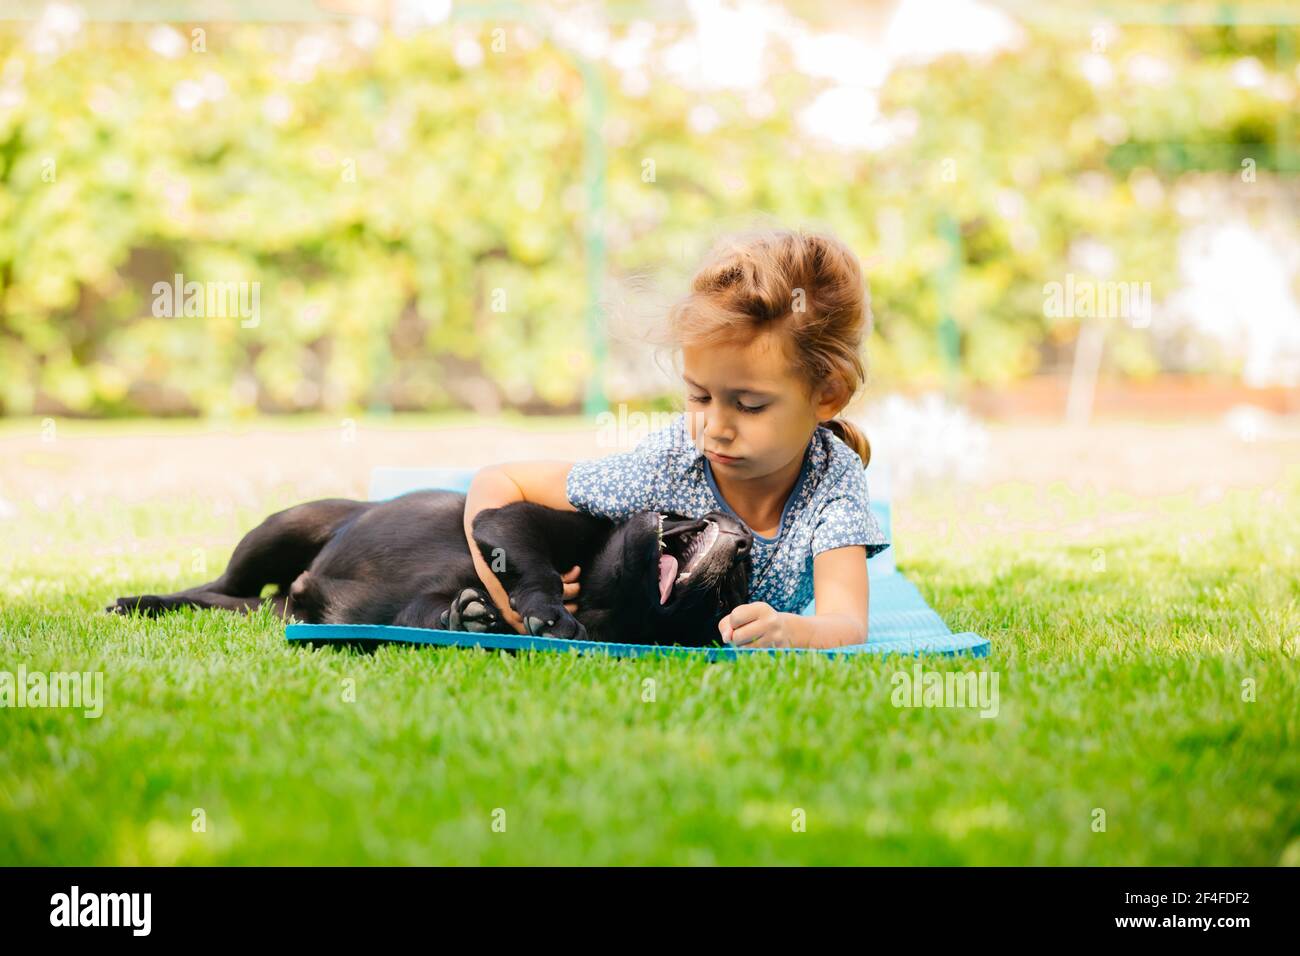 Girl play with adorable black labrador puppy Stock Photo